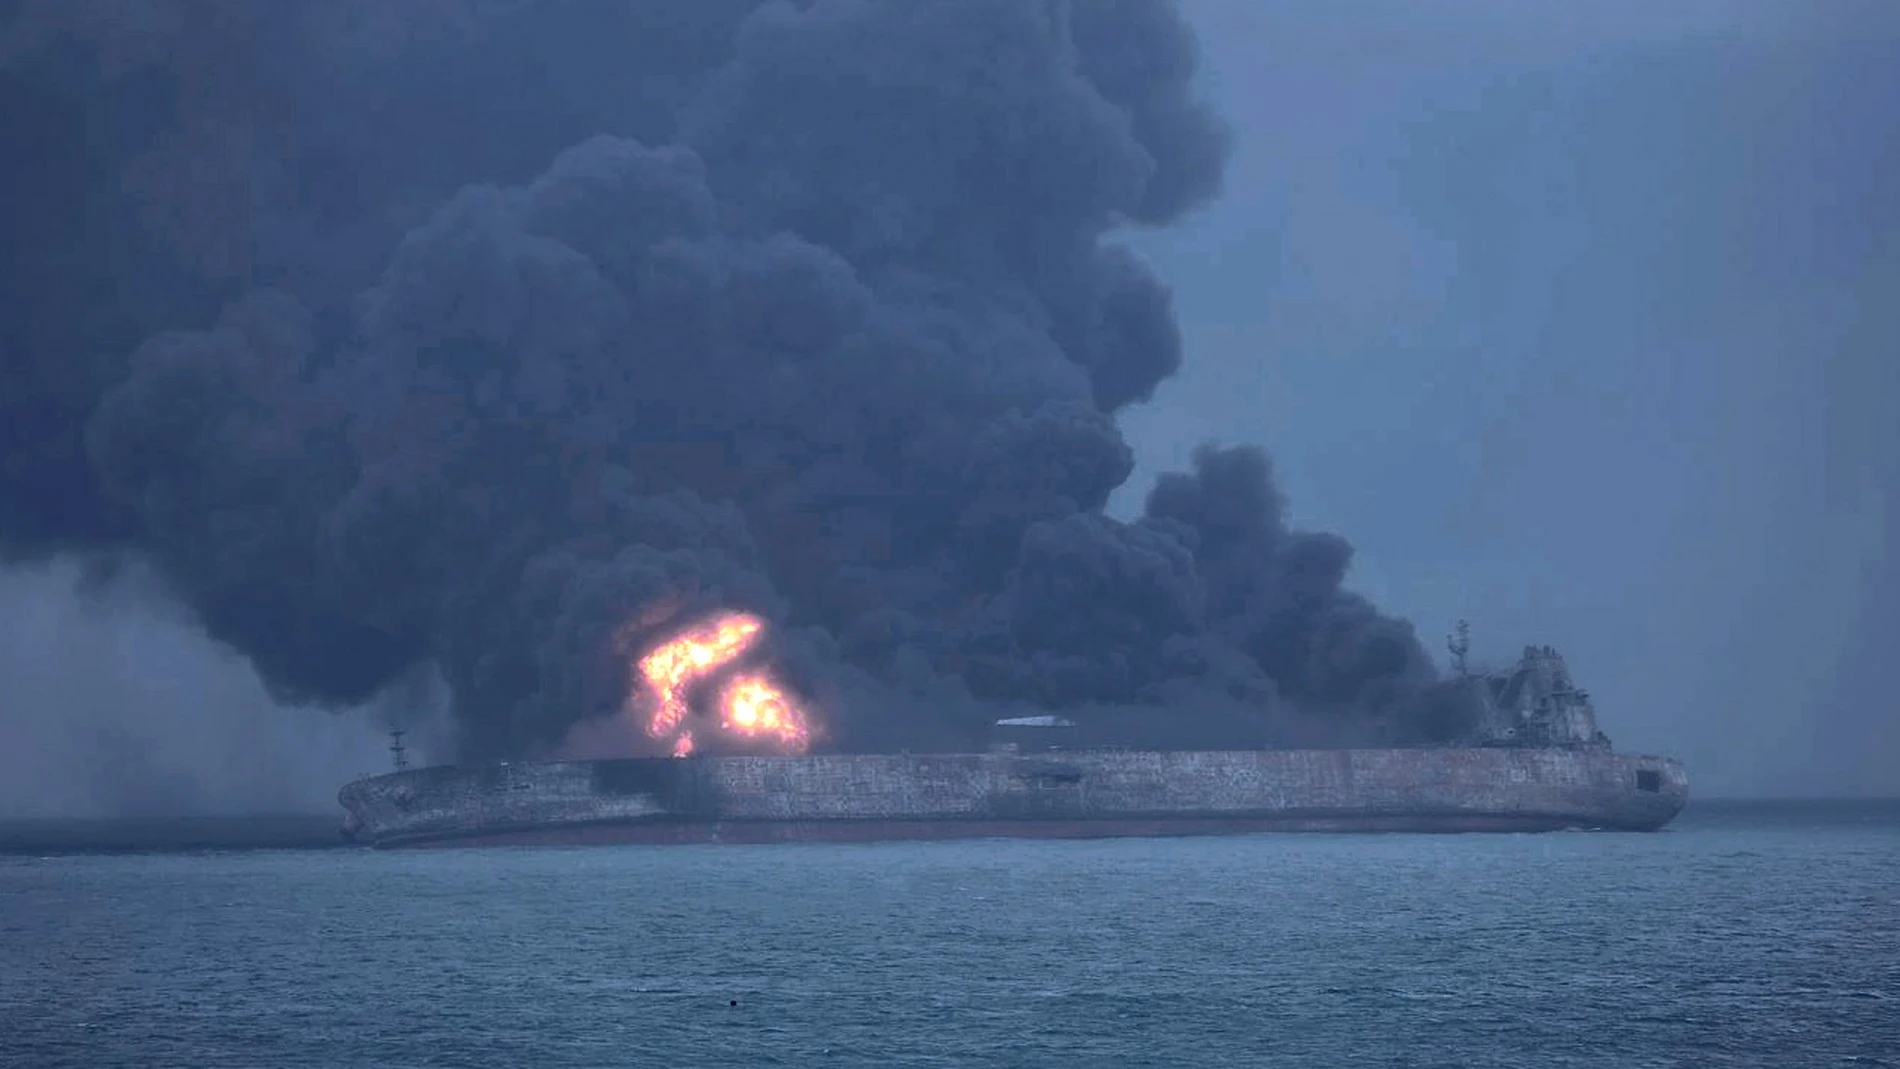 Imagen del incendio del petrolero frente a las costas chinas